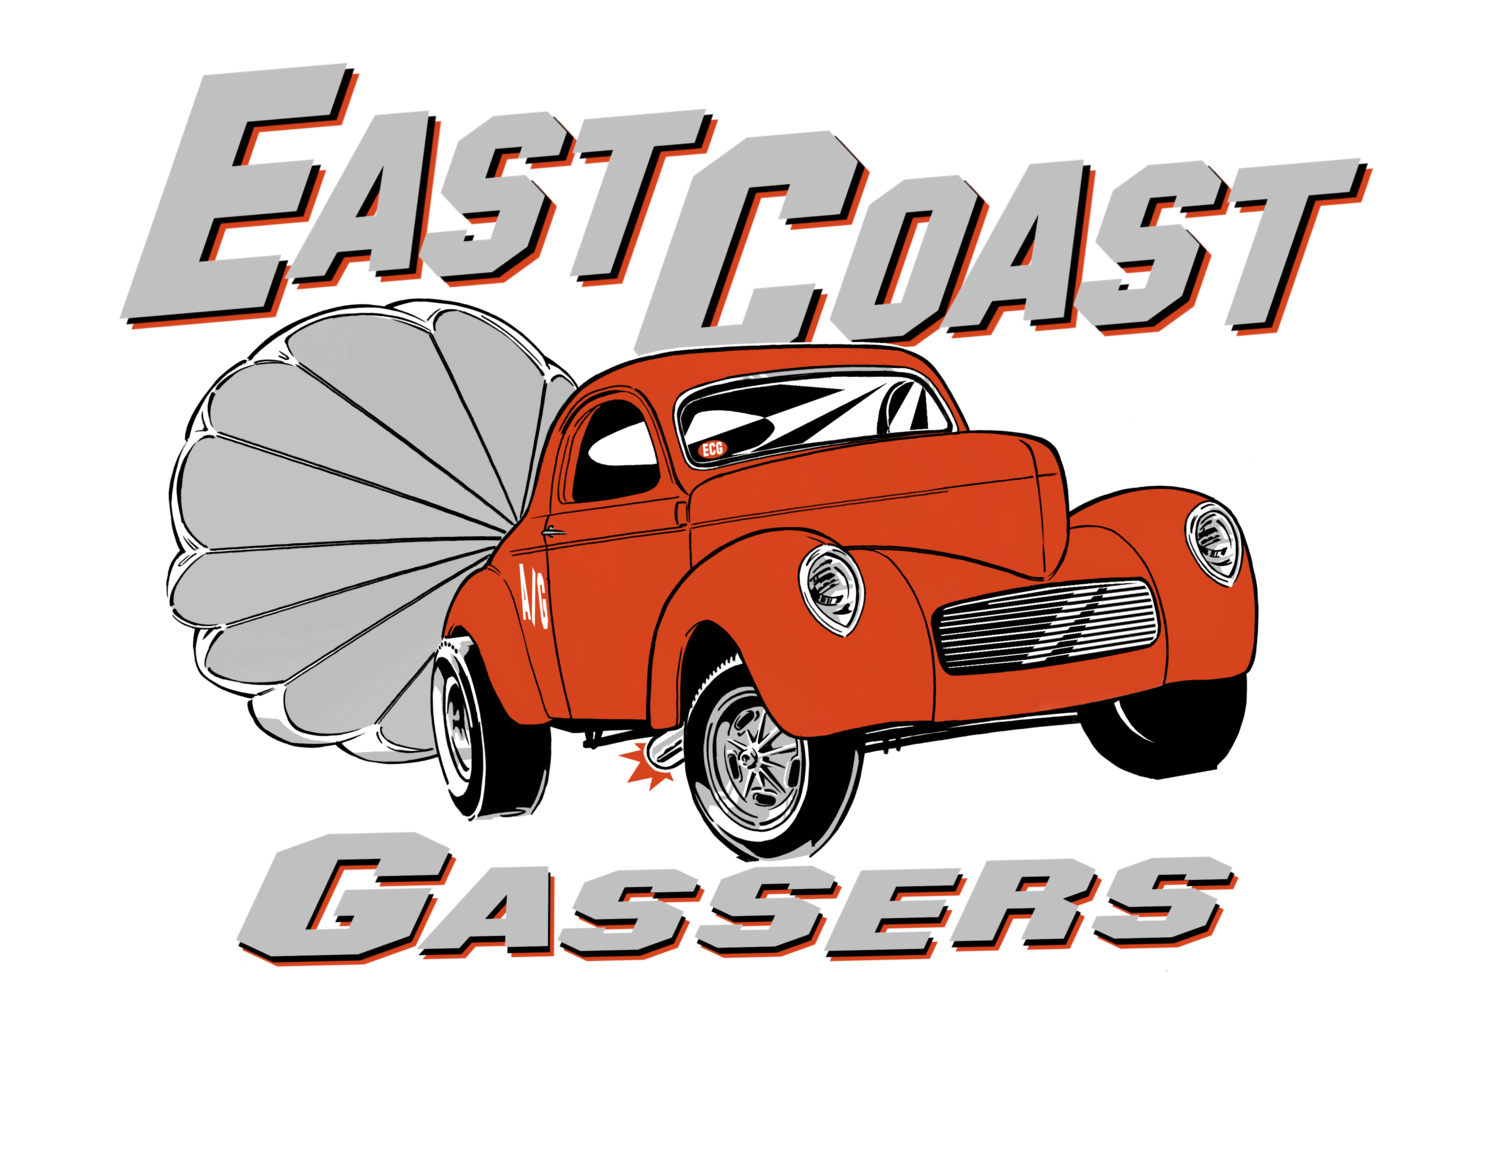 East Coast Gassers